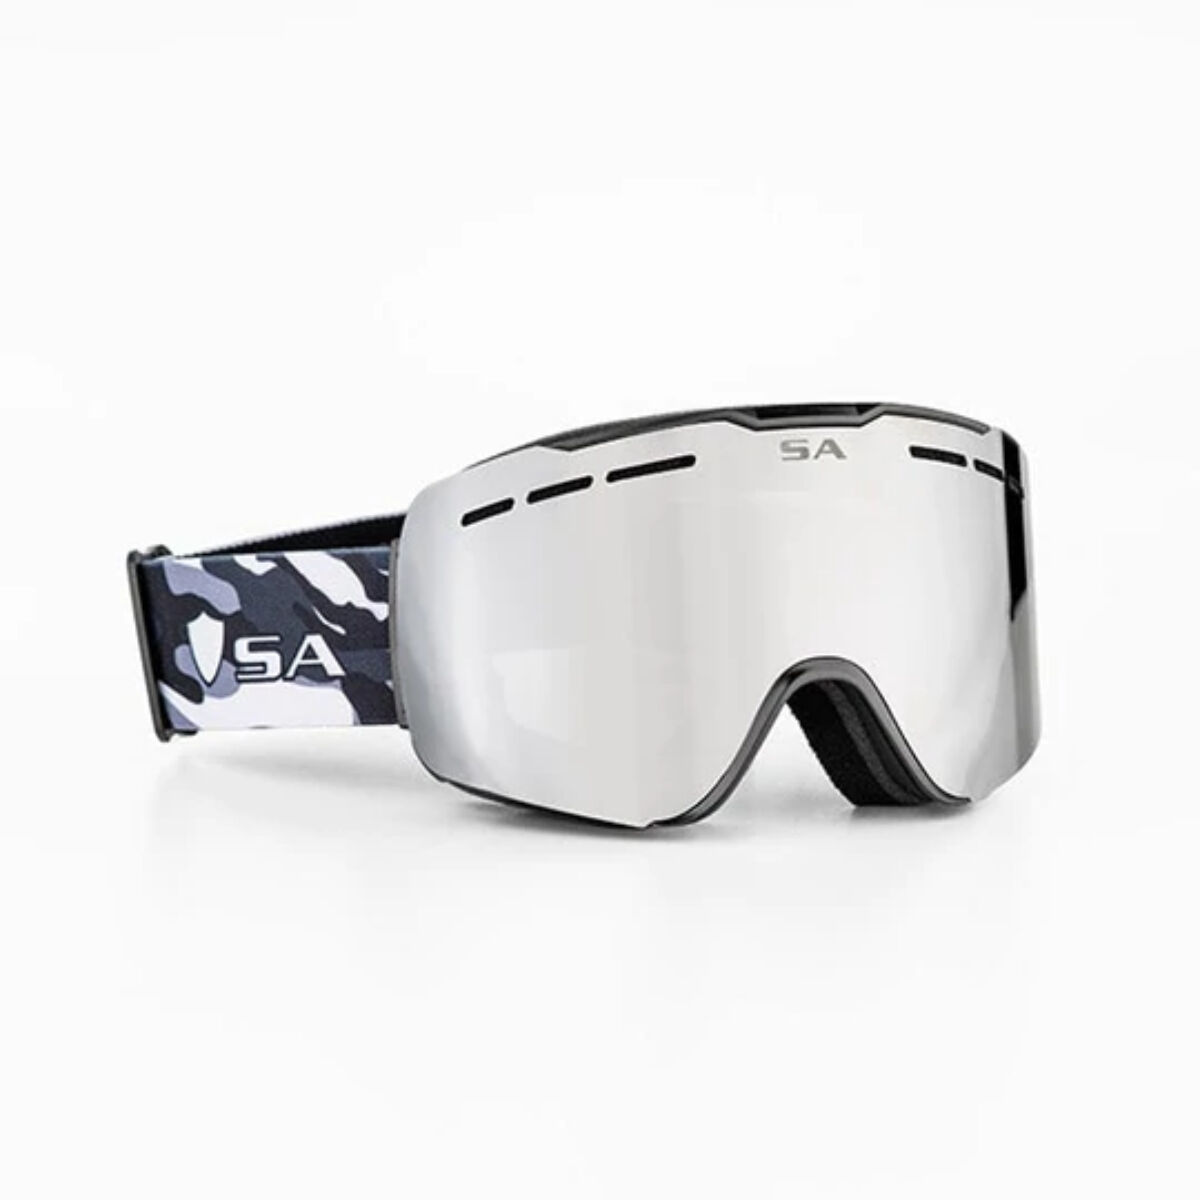 Ravs Ski Goggles Snowboard Glasses Goggles Ski Goggles Snow Goggles Ski Alpine 